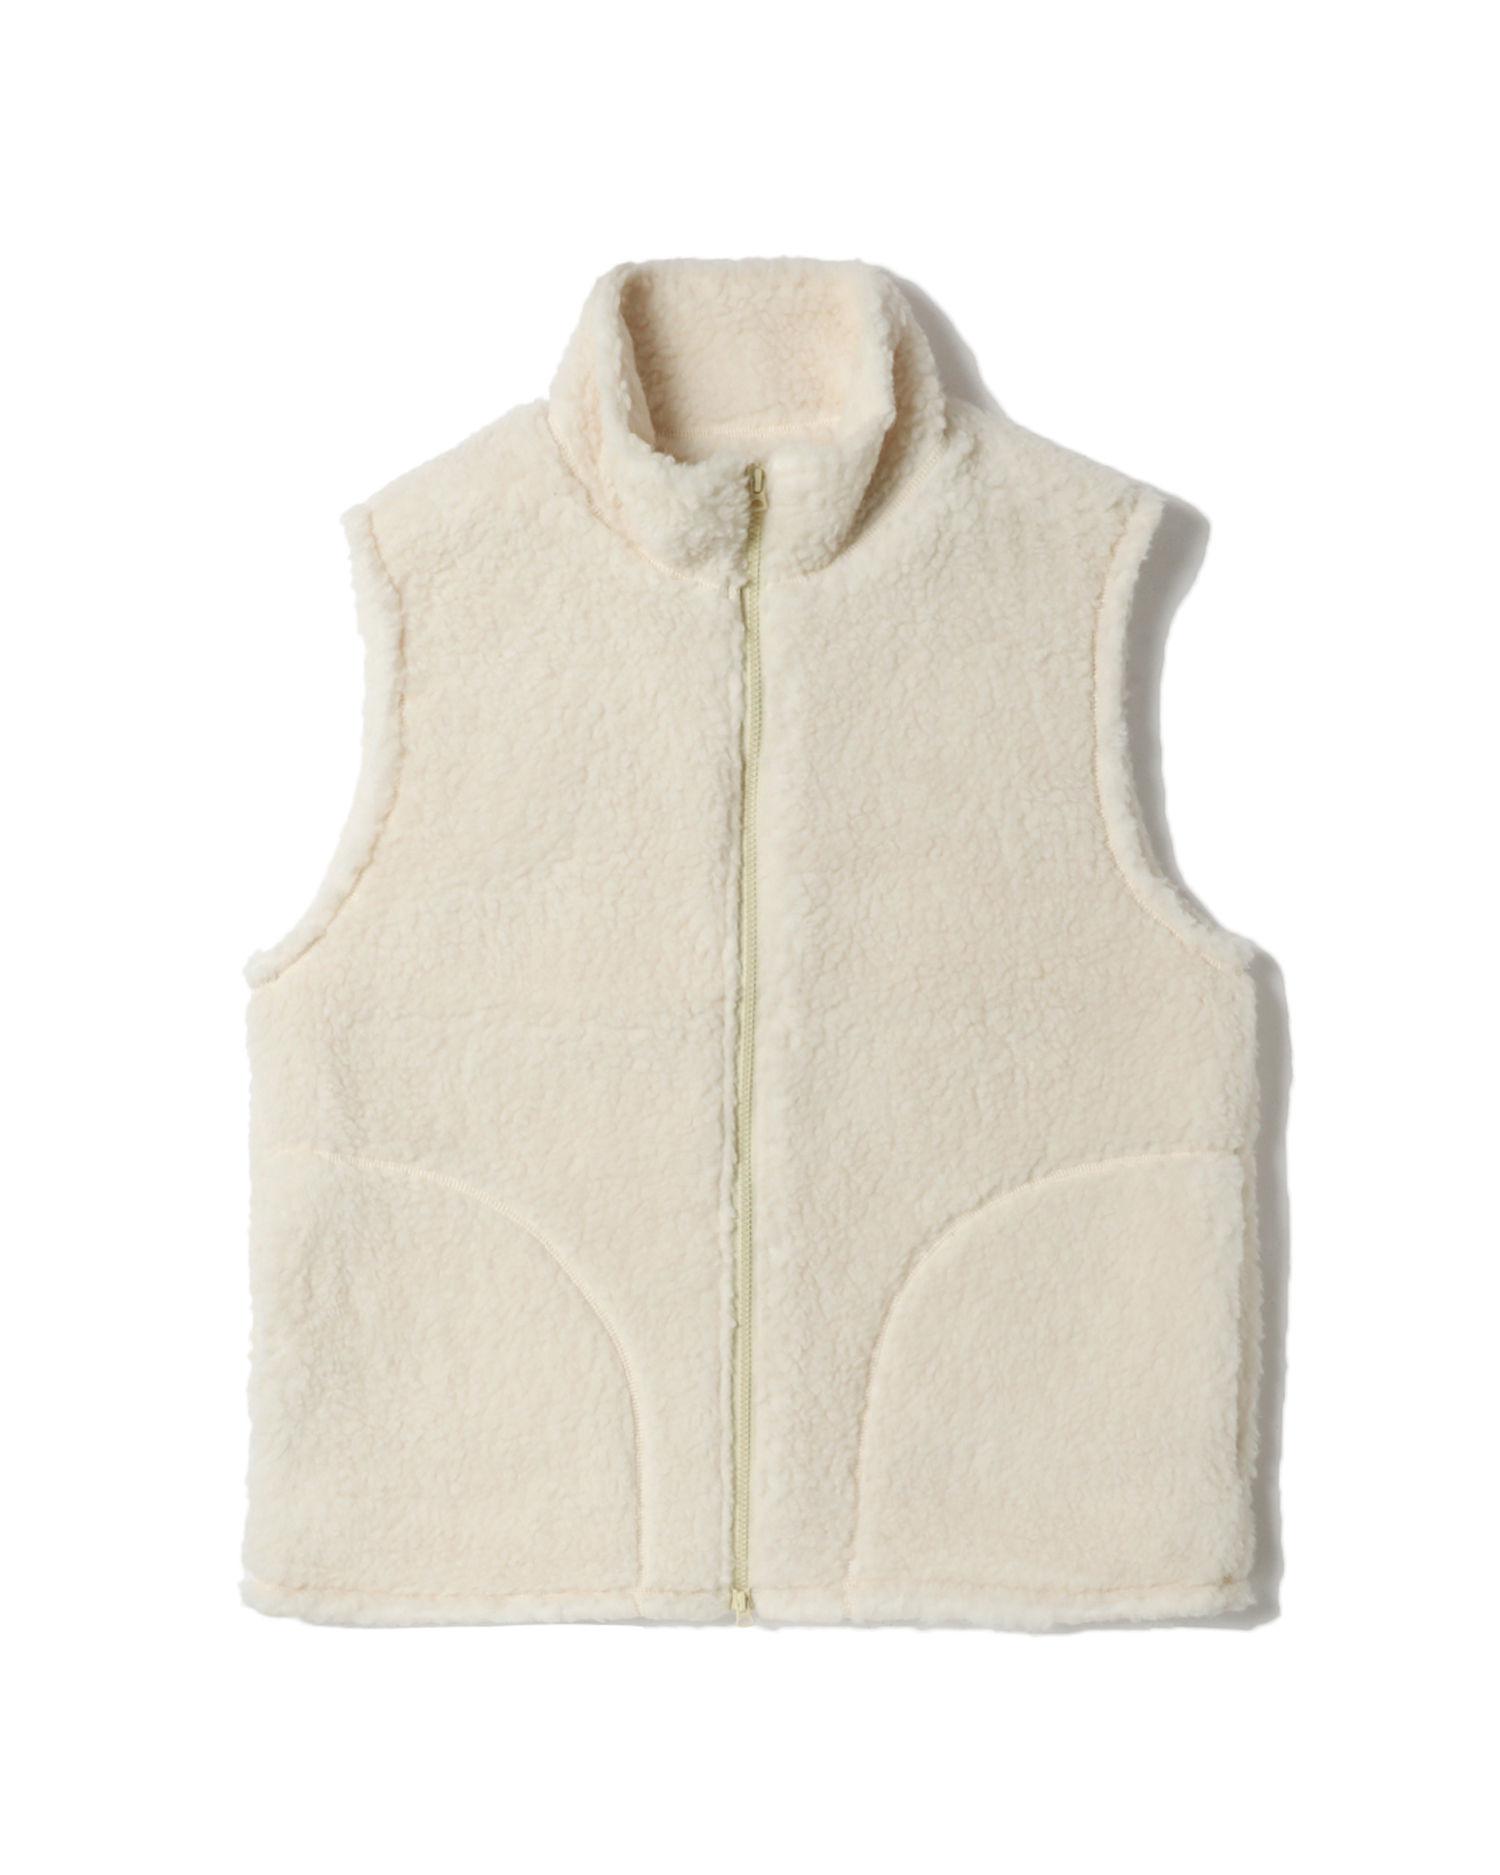 Fleece zip vest by BEAMS PLUS